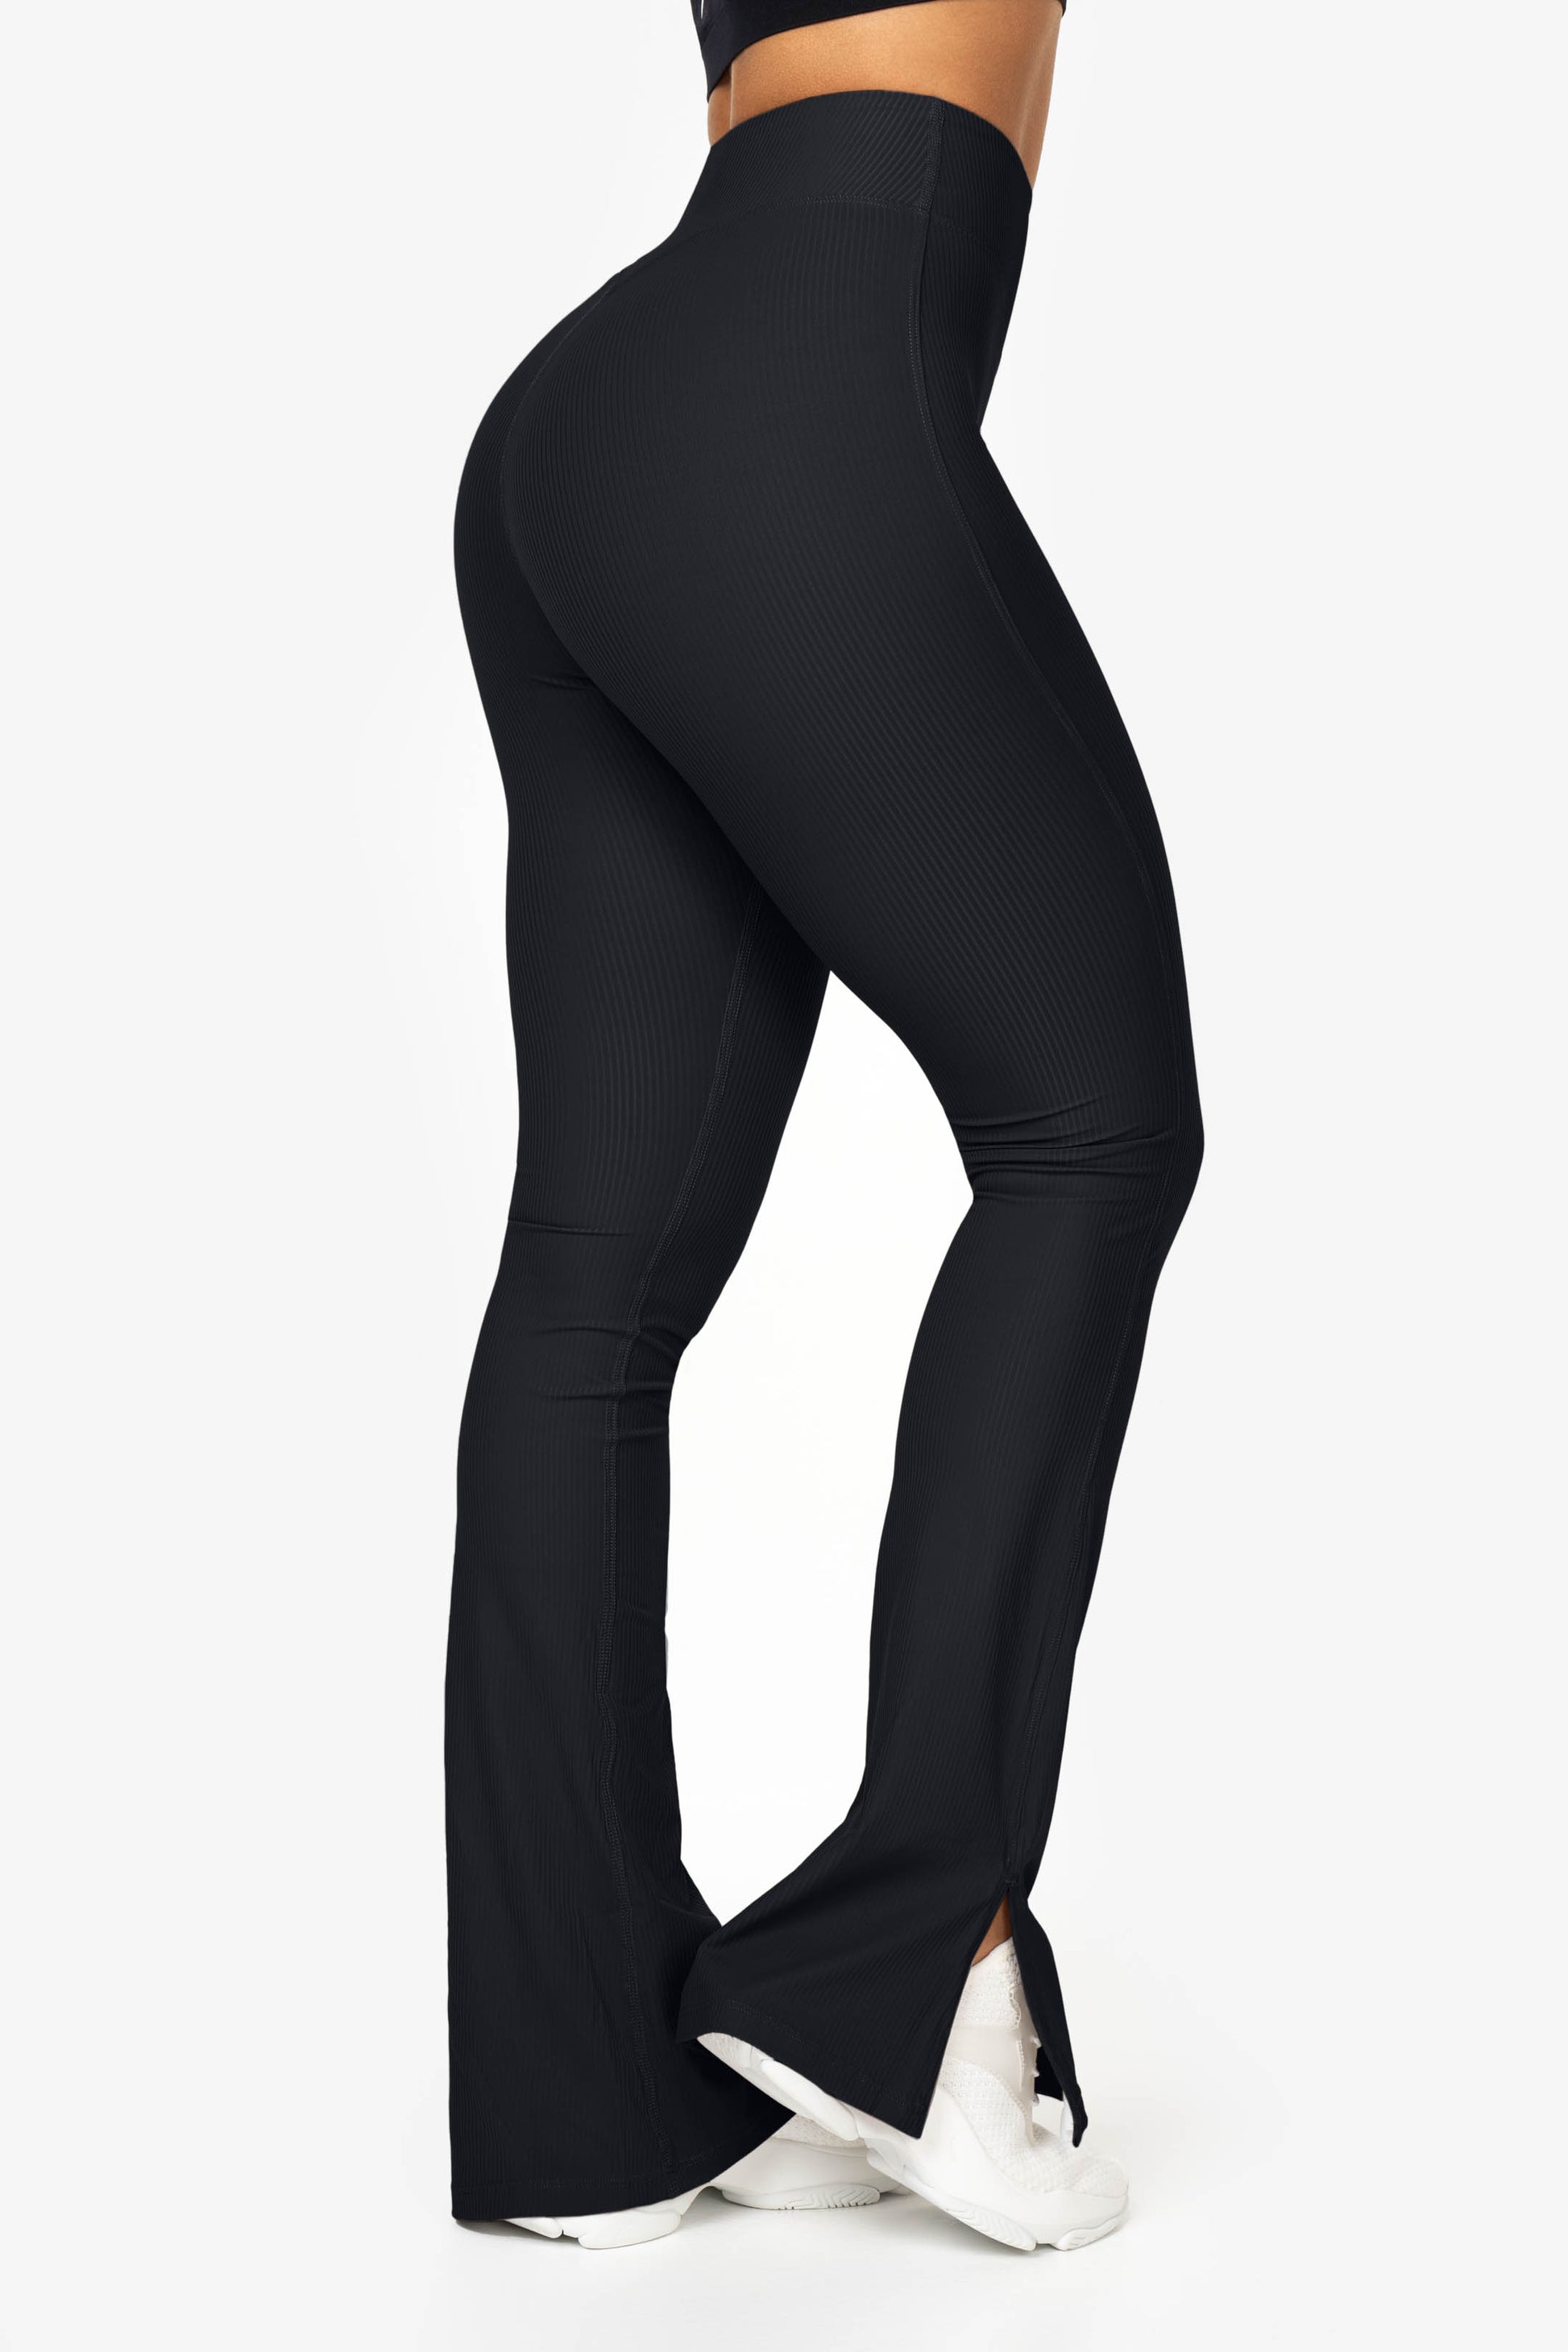 Legens 23 Inch Leggings Irauf Yoga Pants Leggings Calf Length Tall Black  Flares Gym Legging Women Pants Womens Womens : : Fashion